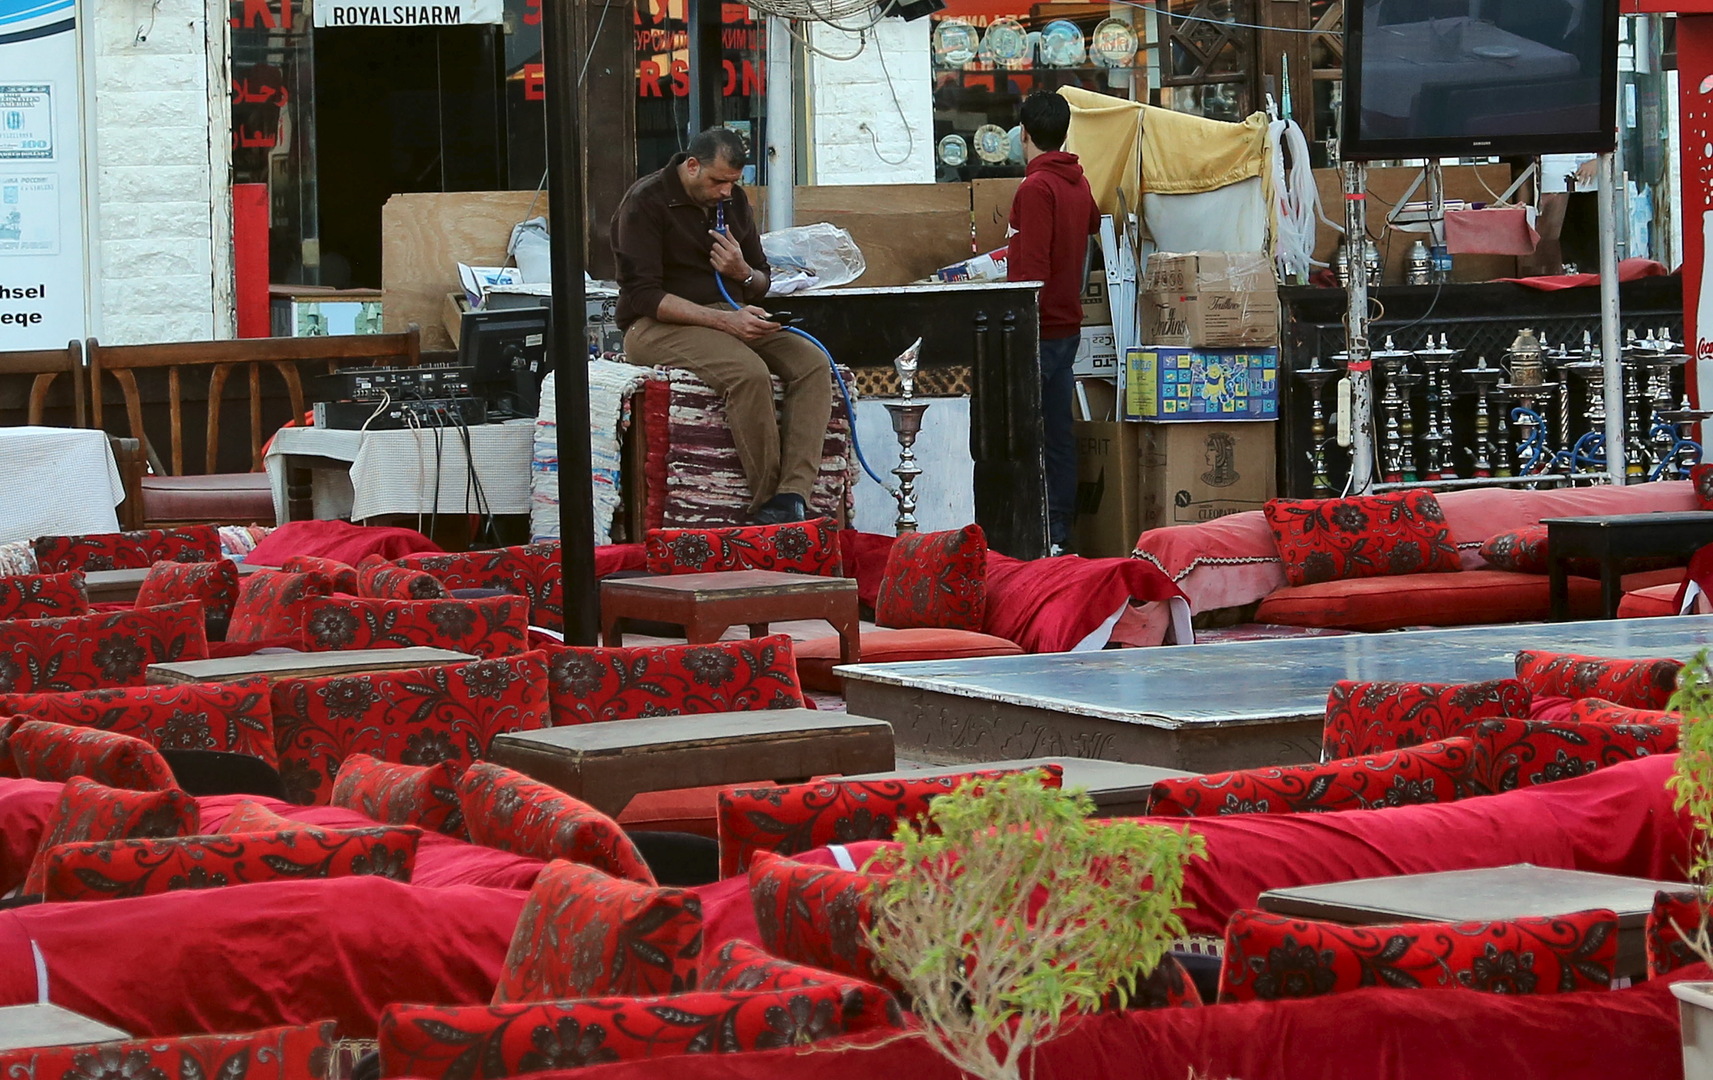 مصر تغلق المقاهي والنوادي الليلية والمراكز التجارية والمطاعم ليلا حتى 31 مارس